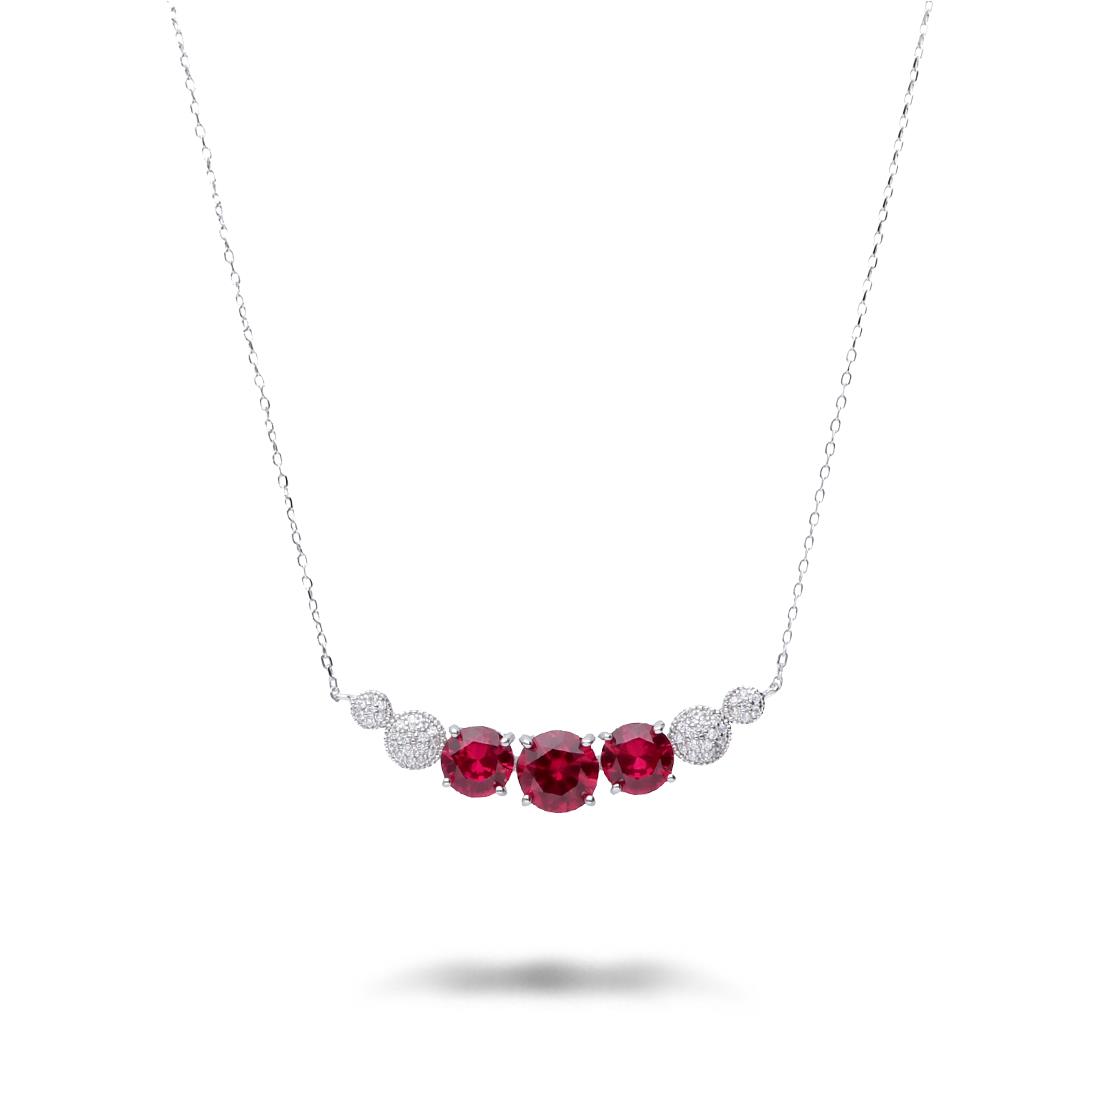 Collar de plata con piedras rojas y blancas - ORO&CO 925